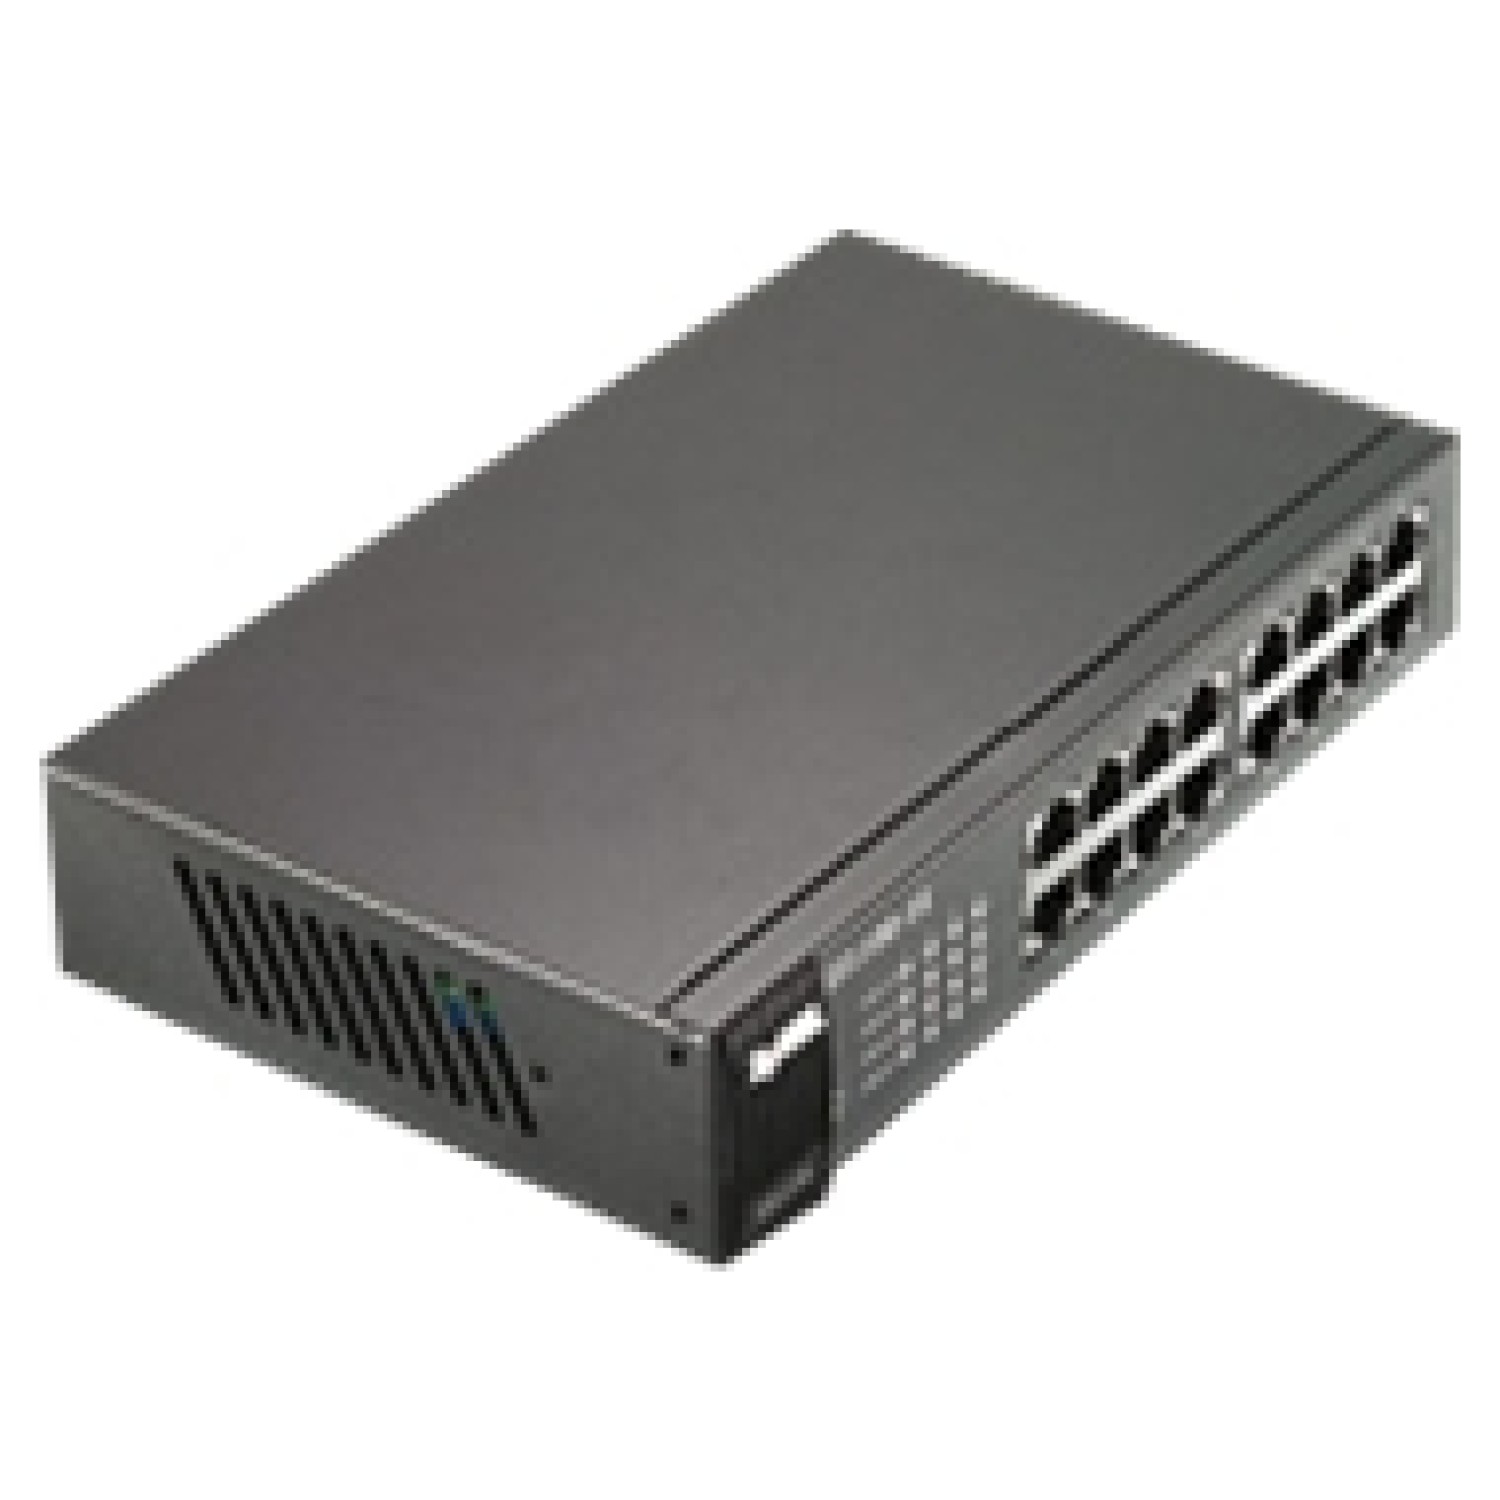 ZYXEL GS1100-16 16 port Gigabit UnmanSwc